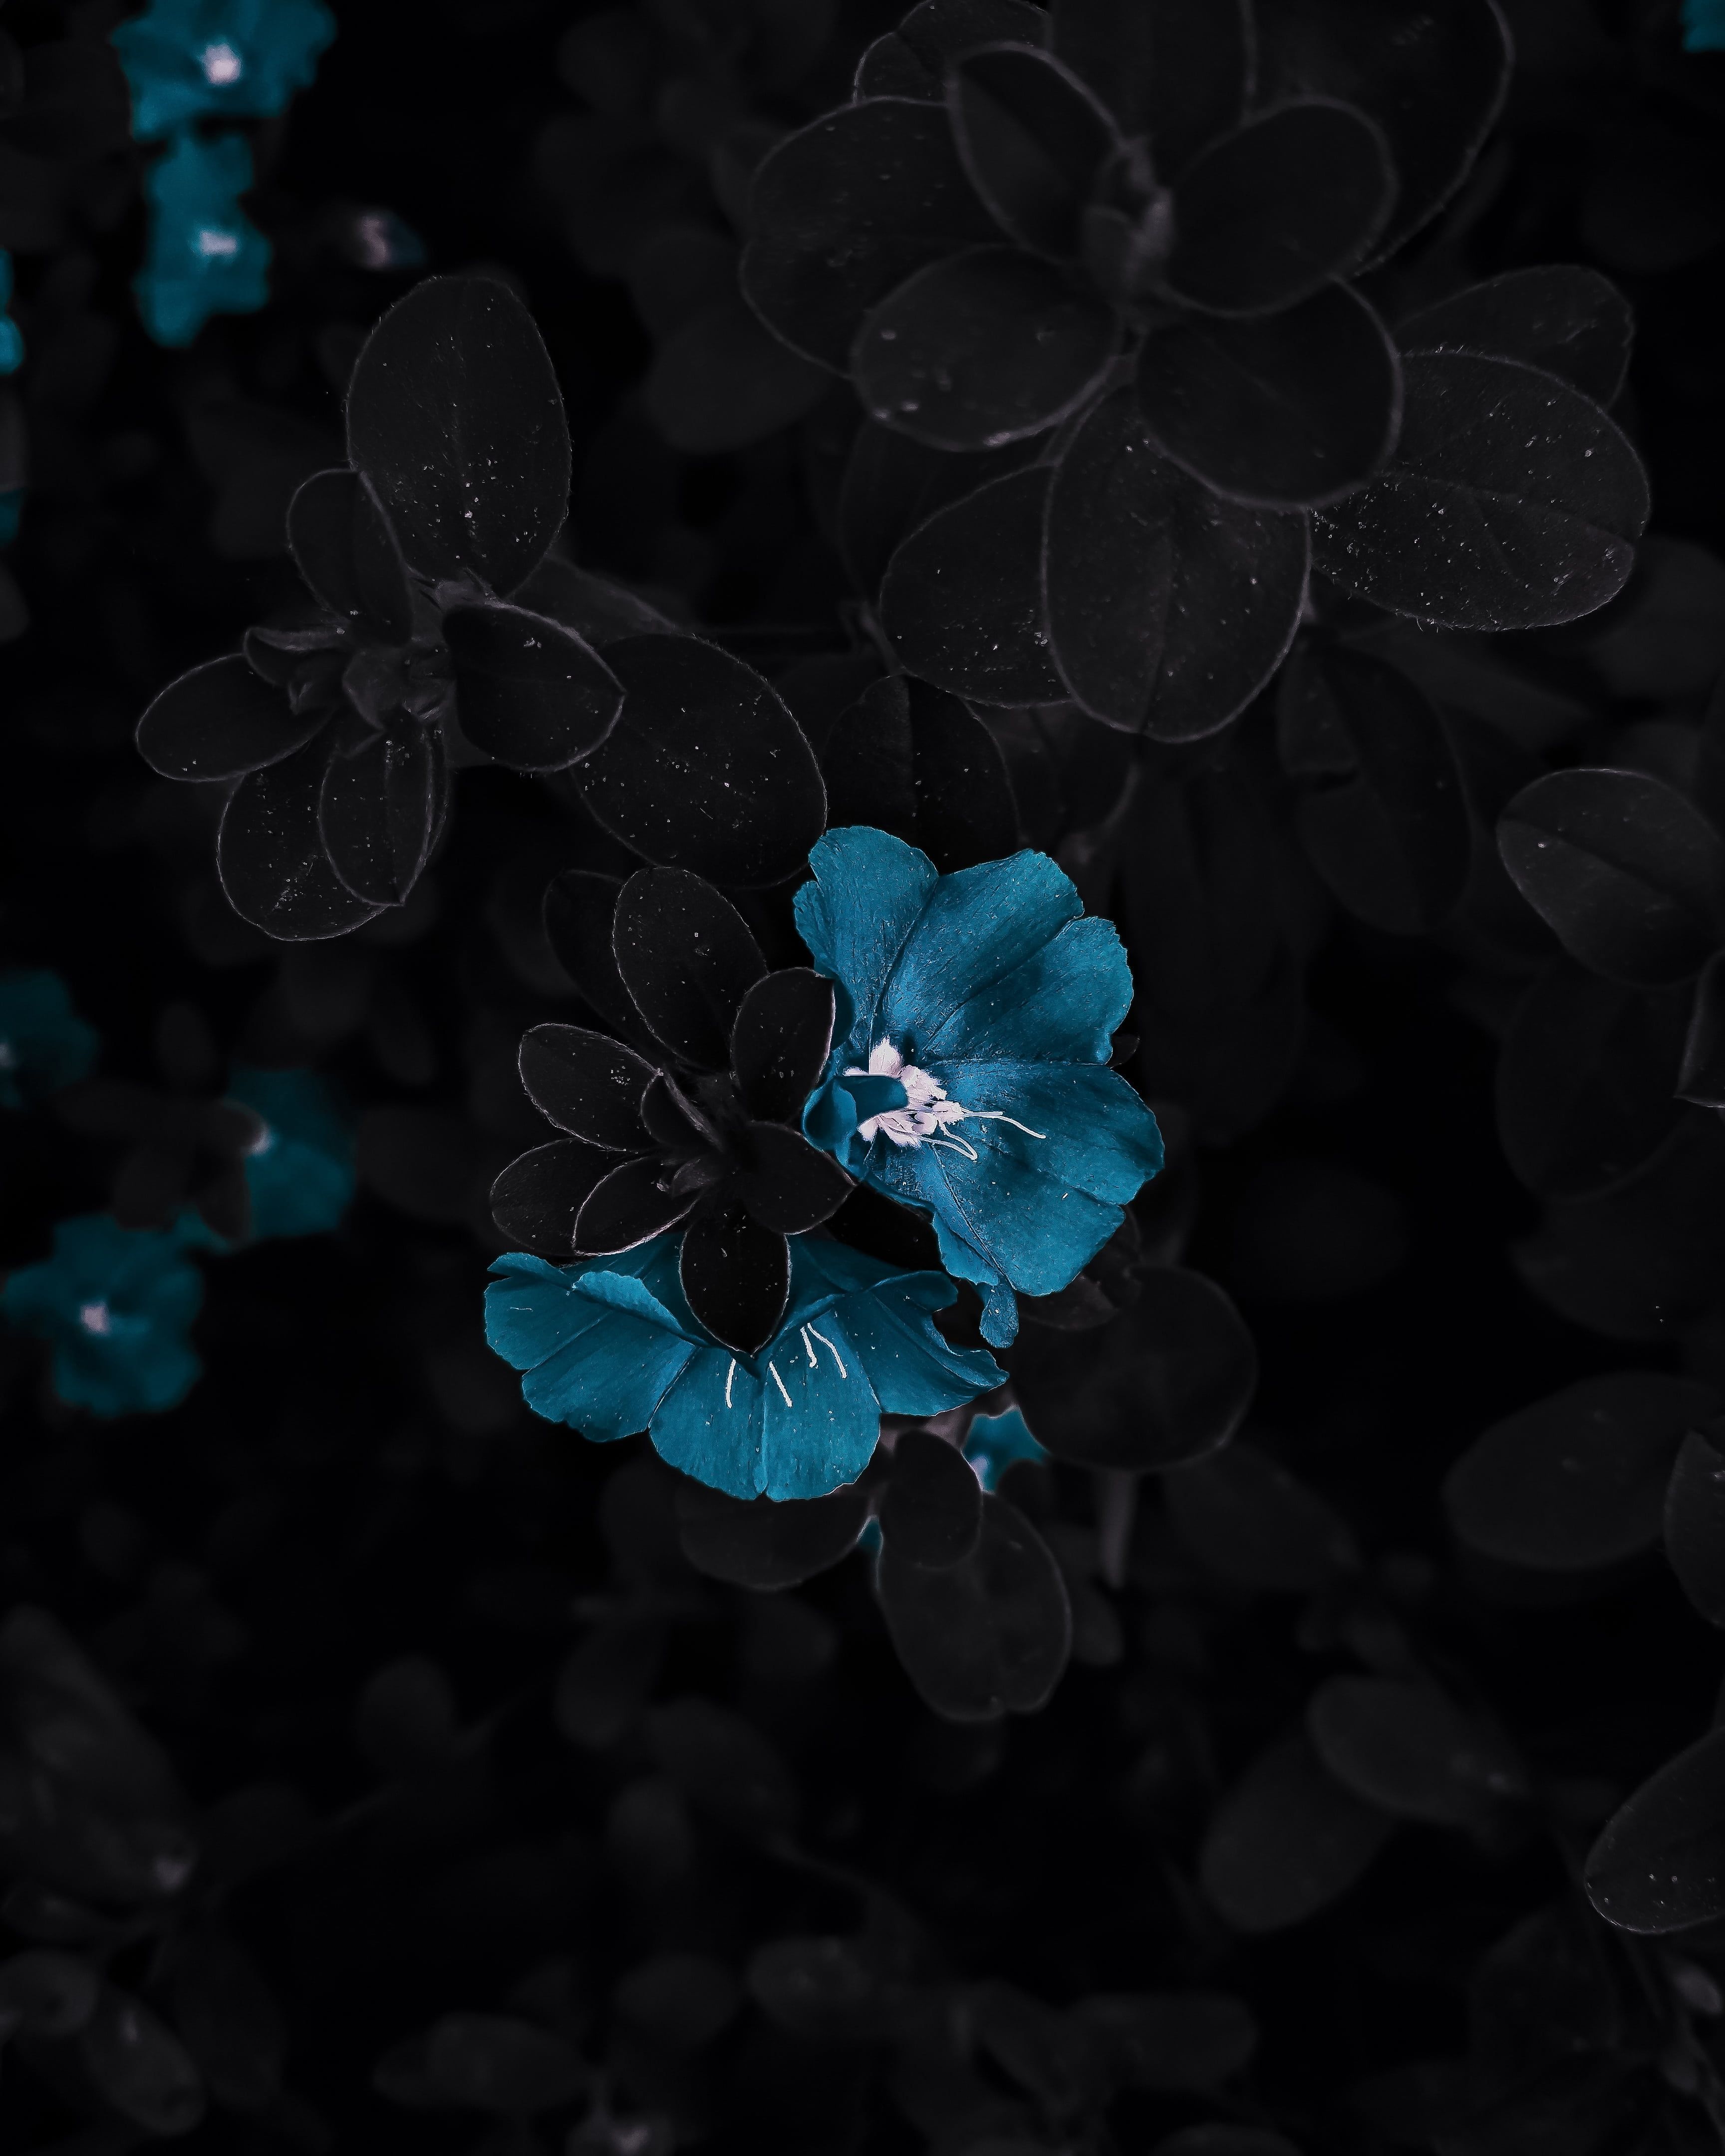 Black/Blue Flower Aesthetic - Wallpaper Cave